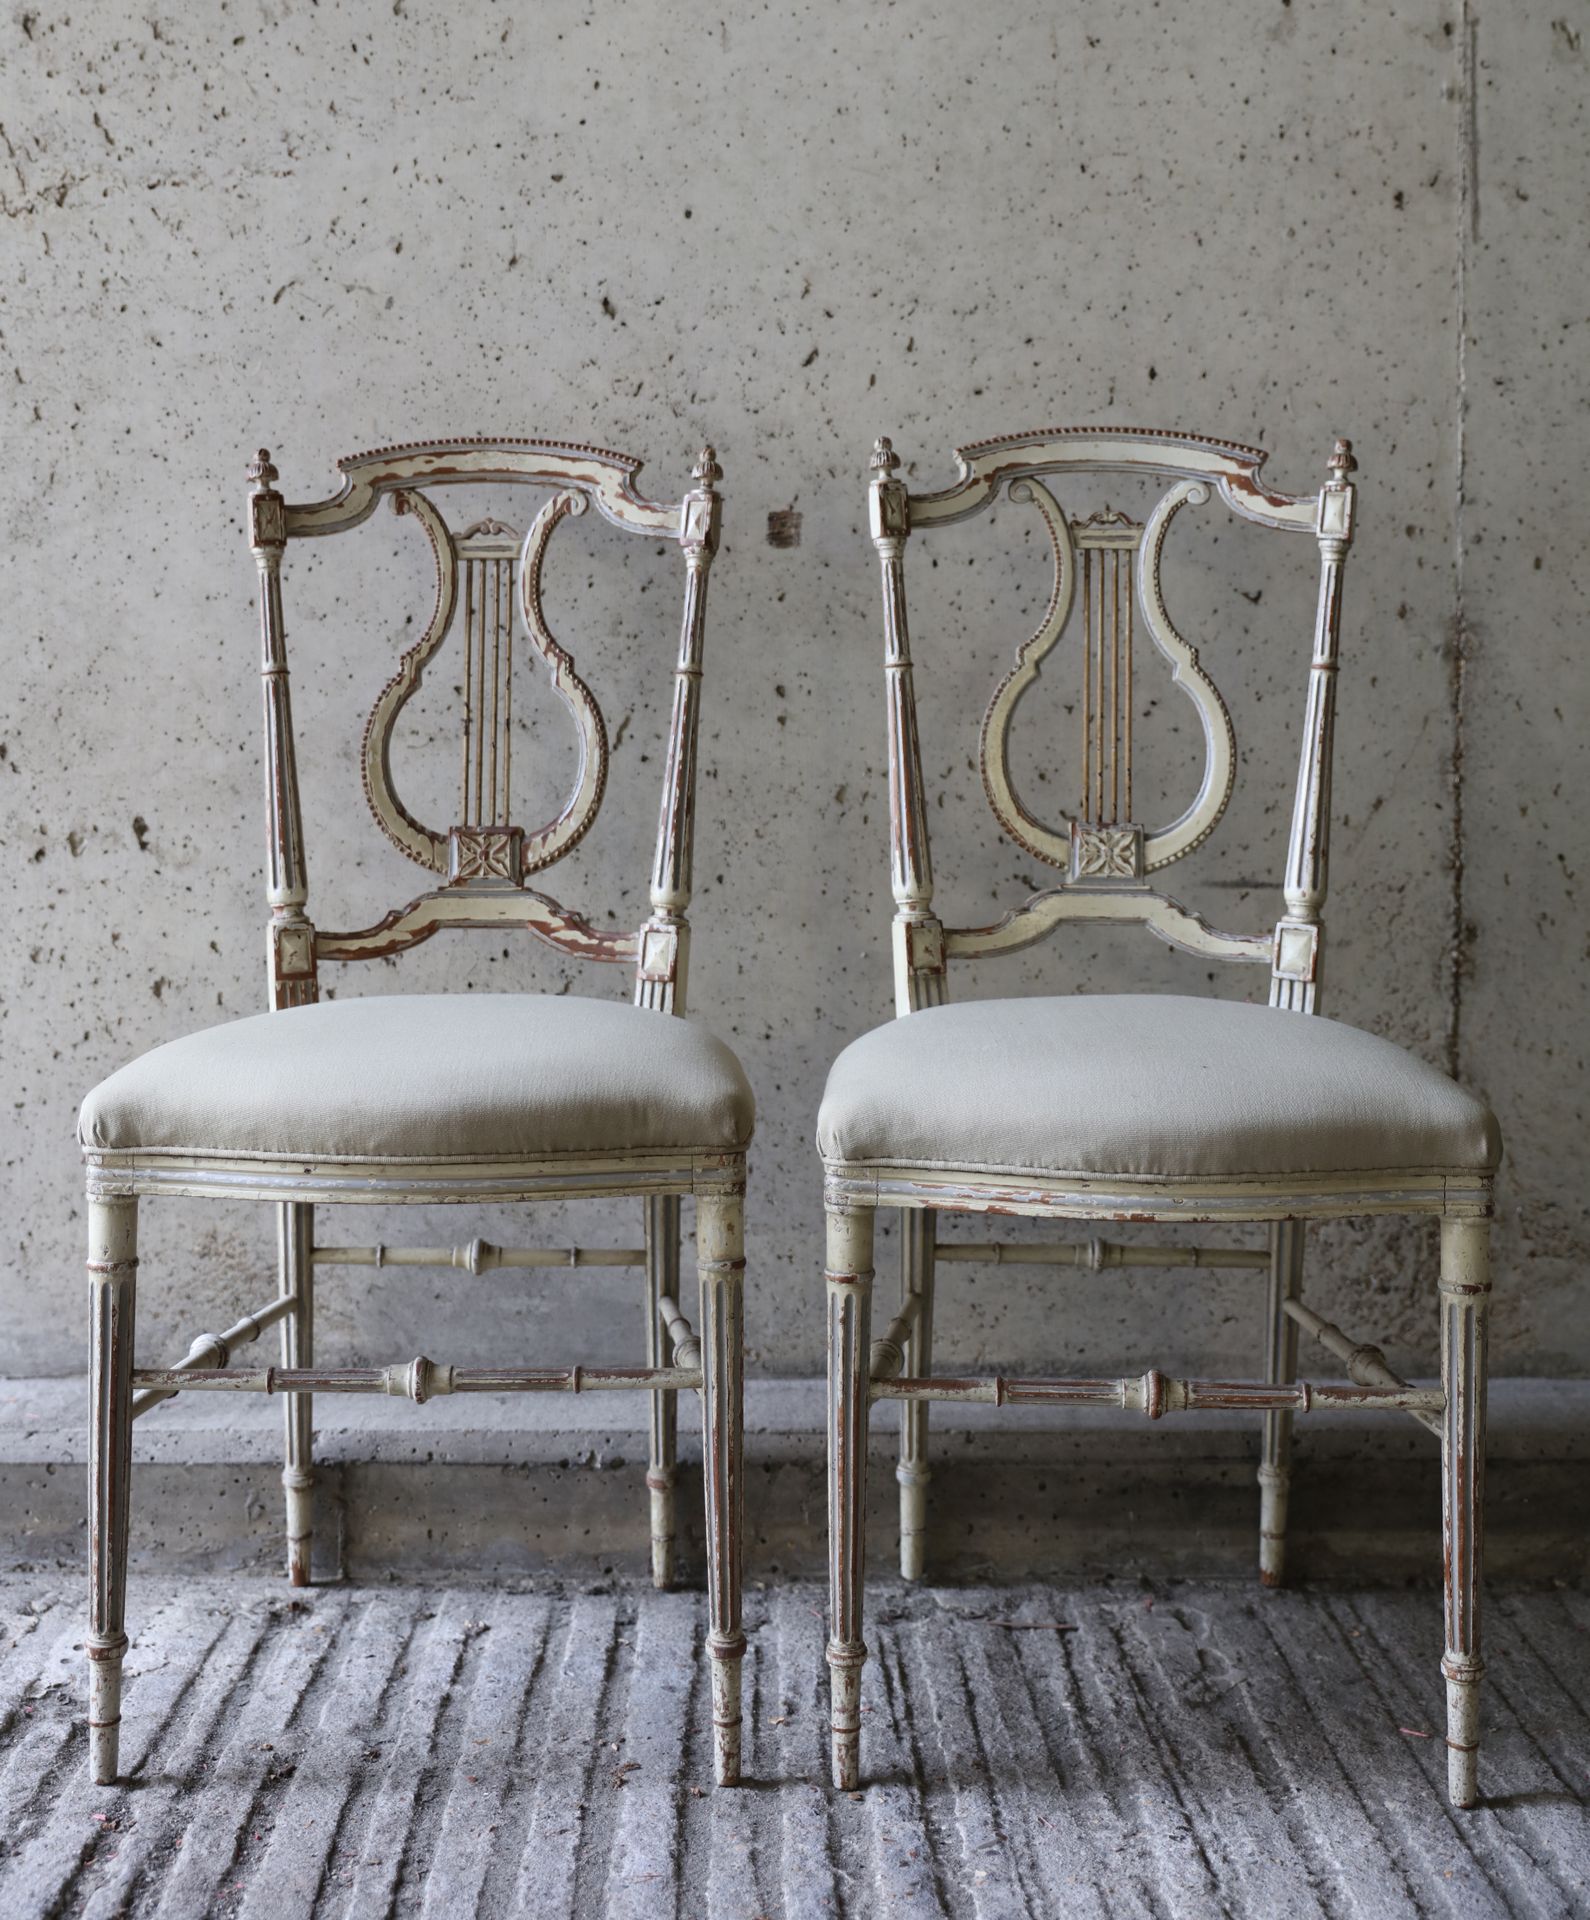 VARIA Coppia di sedie in stile Luigi XVI, schienale a forma di lira
Paar stoeltj&hellip;